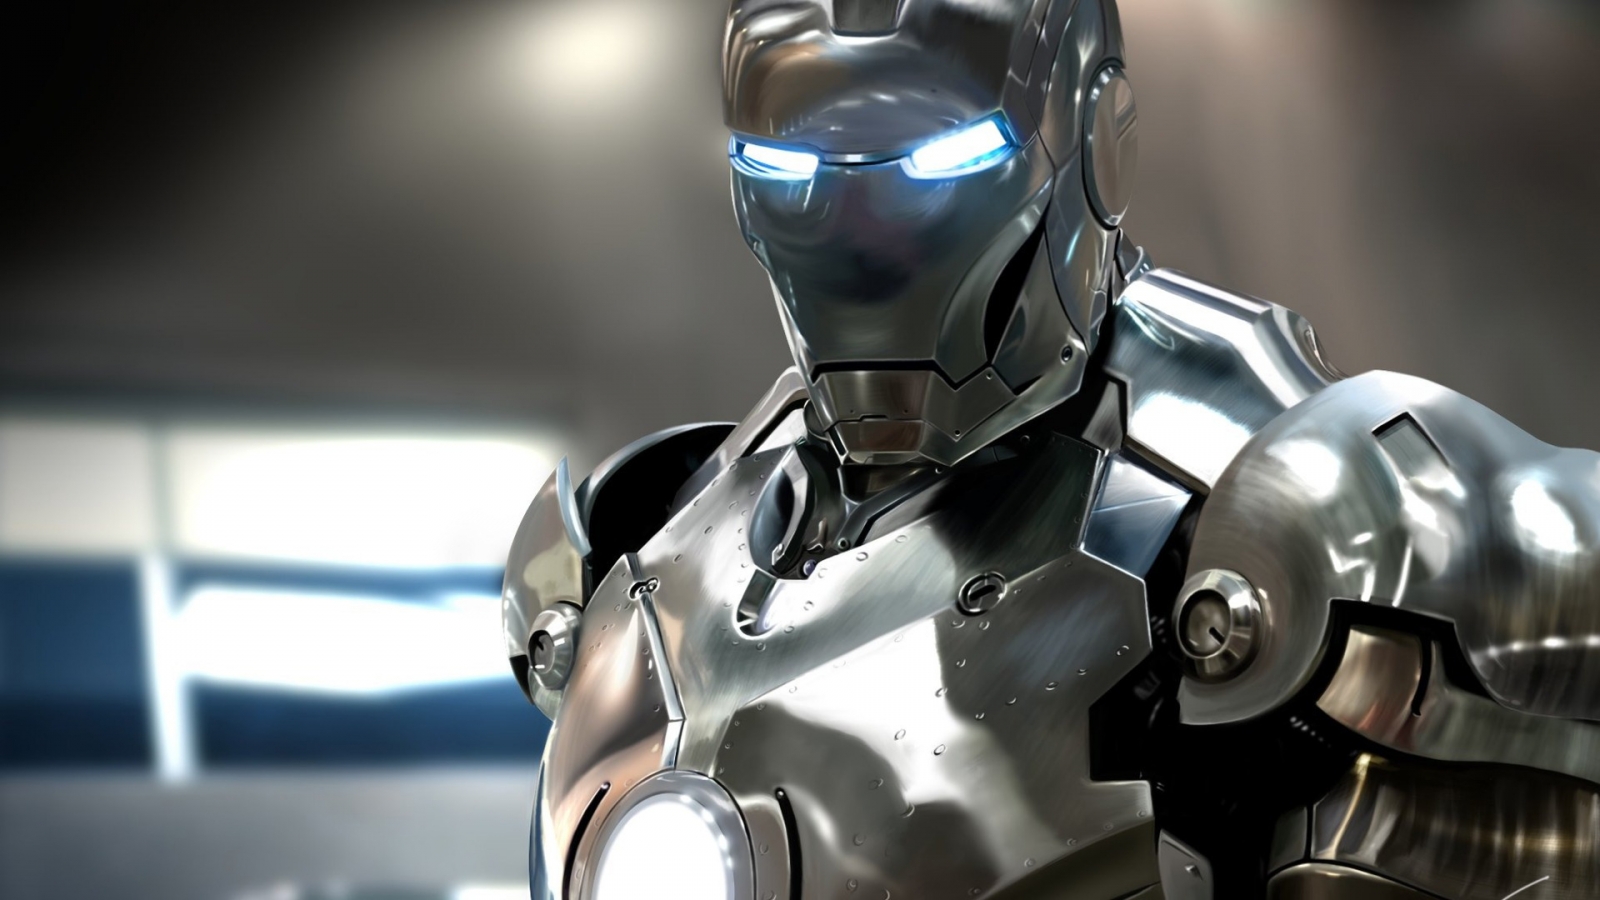 Iron Man 2 War Machine for 1600 x 900 HDTV resolution